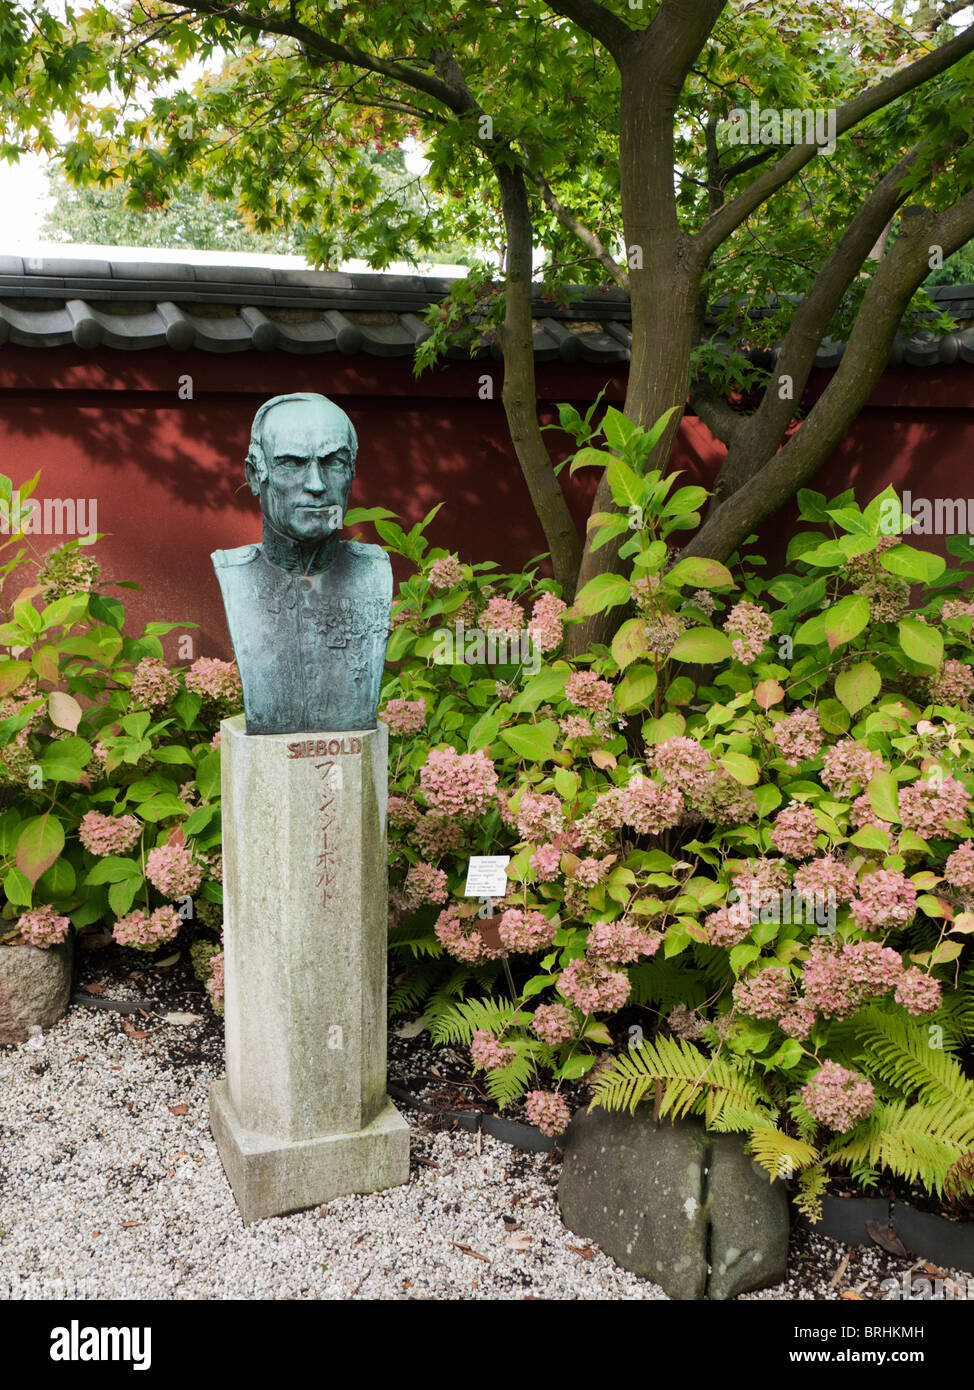 Bust in The Von Siebold Memorial Garden in Hortus Botanicus  in Leiden The Netherlands Stock Photo